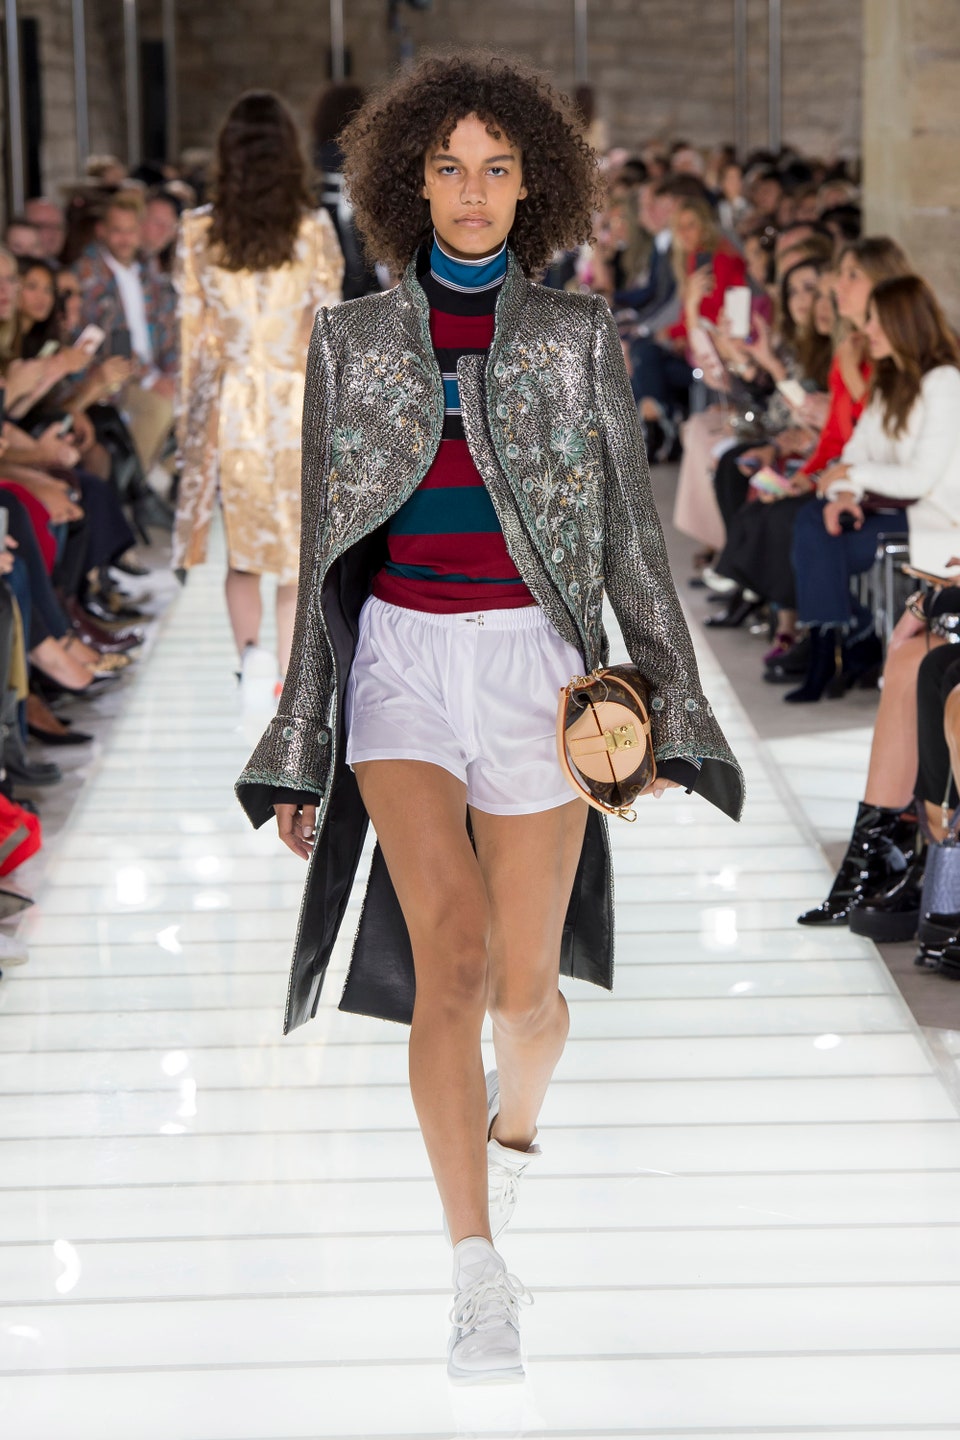 21metgala on X: Chloe Grace Moretz attends the Louis Vuitton